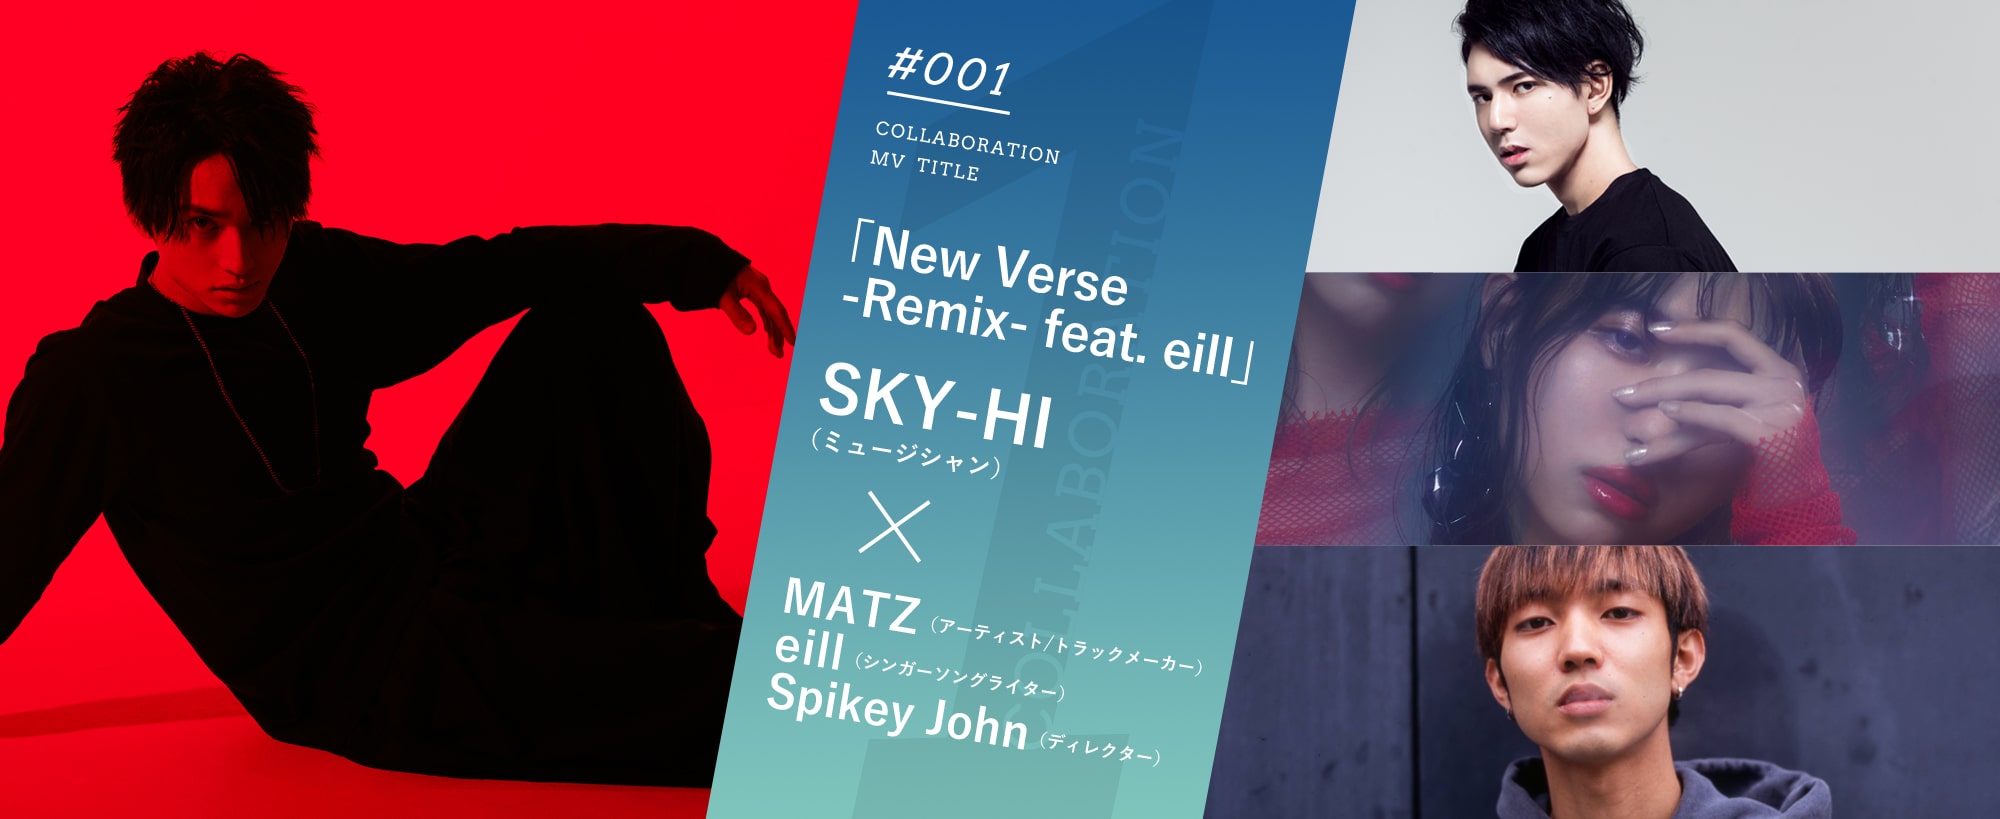 #001「New Verse -Remix- feat. eill」SKY-HI（ミュージシャン）×MATZ（アーティスト/ラックメーカー） eill（シンガーソングライター） Spikey John（ディレクター）